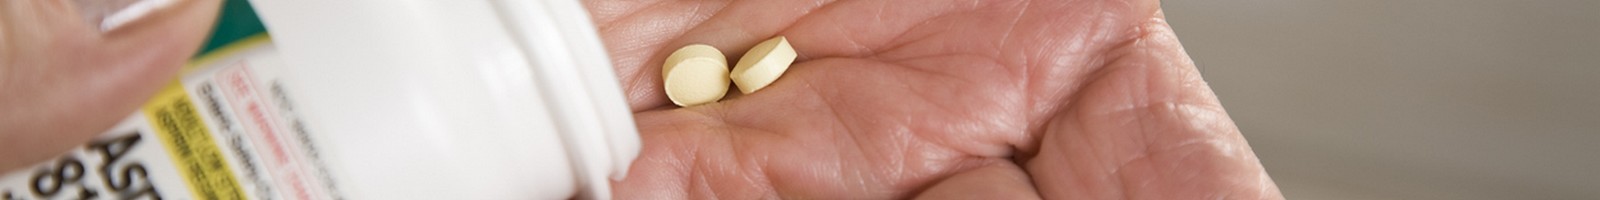 Un effet secondaire méconnu de l’aspirine révélé par une alerte